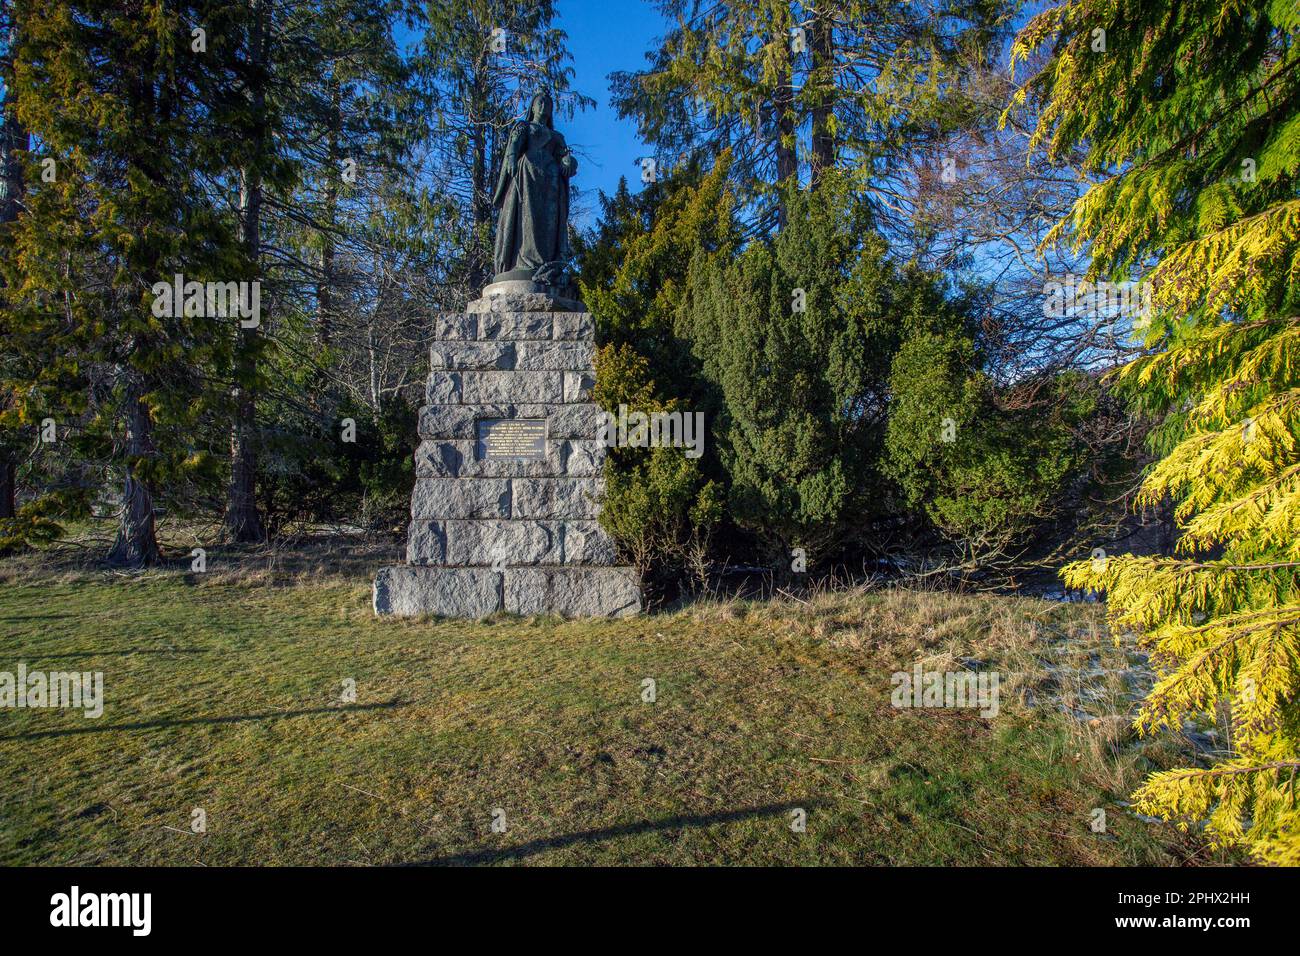 Queen Victoria Statue, Balmoral Castle, Stock Photo